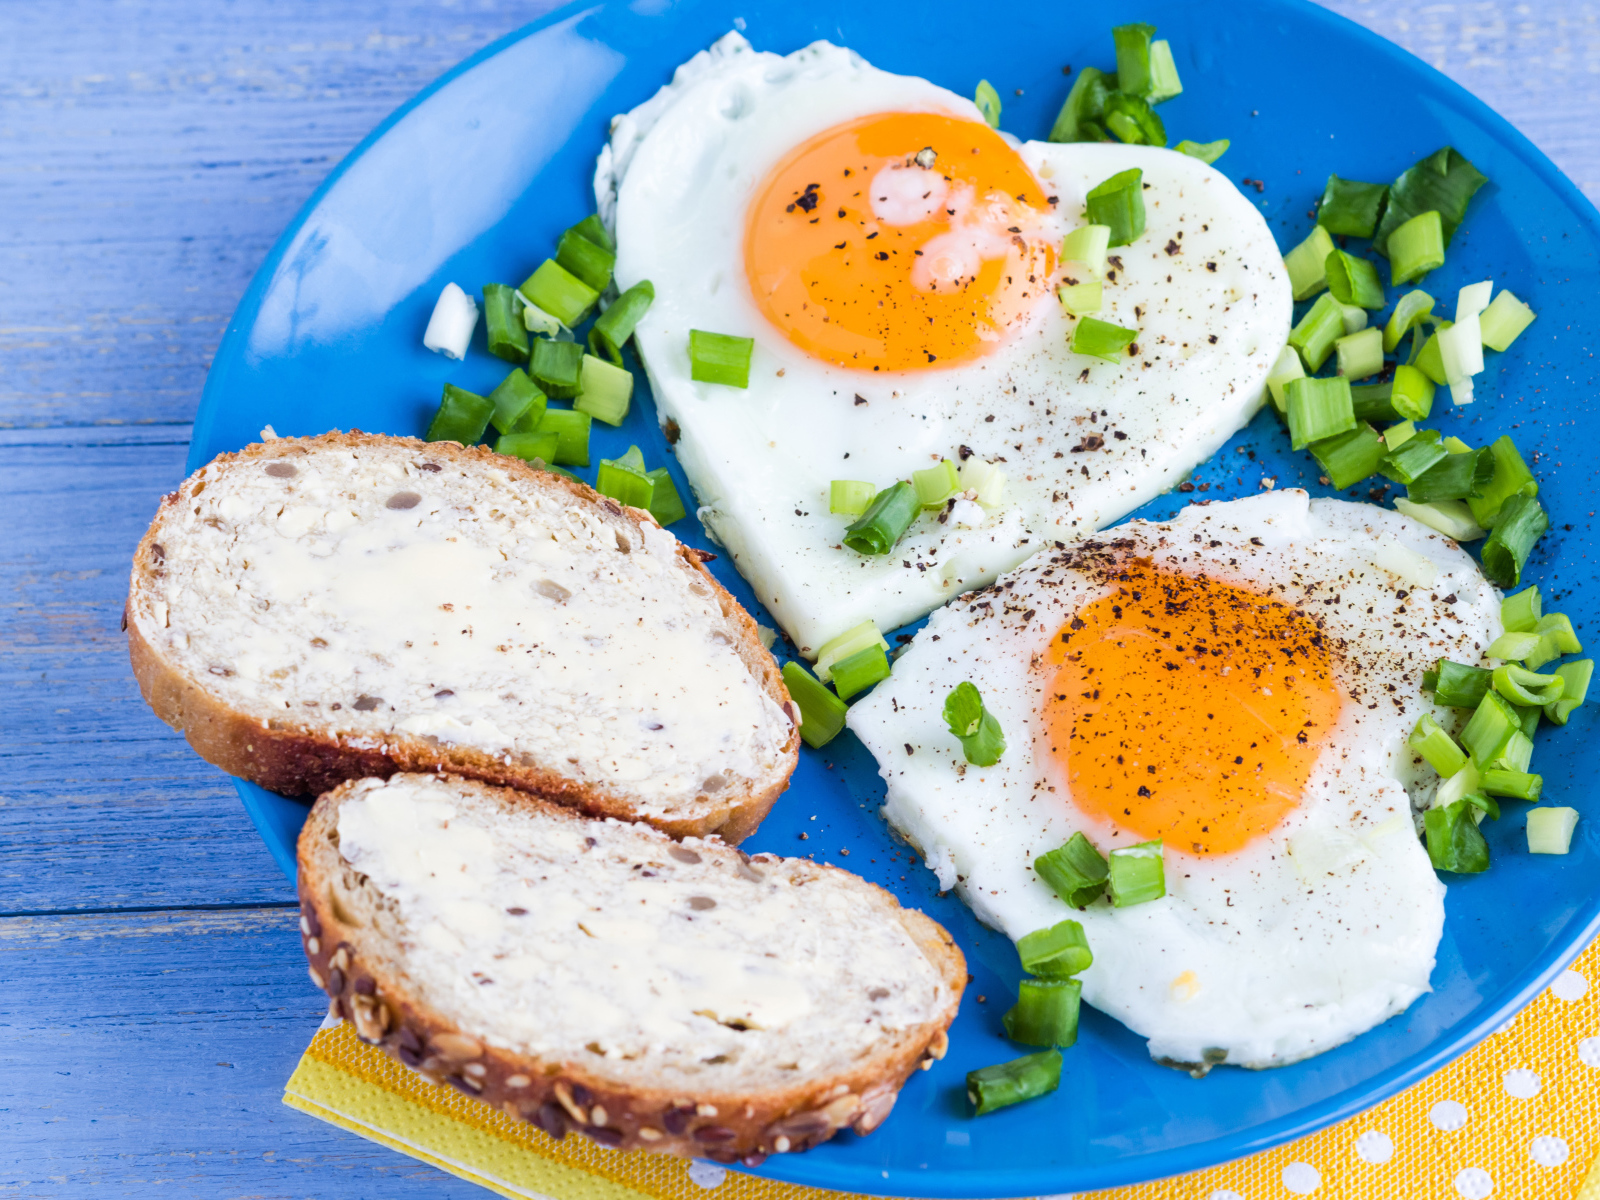 Яичница в форме сердца и бутерброды на завтрак 